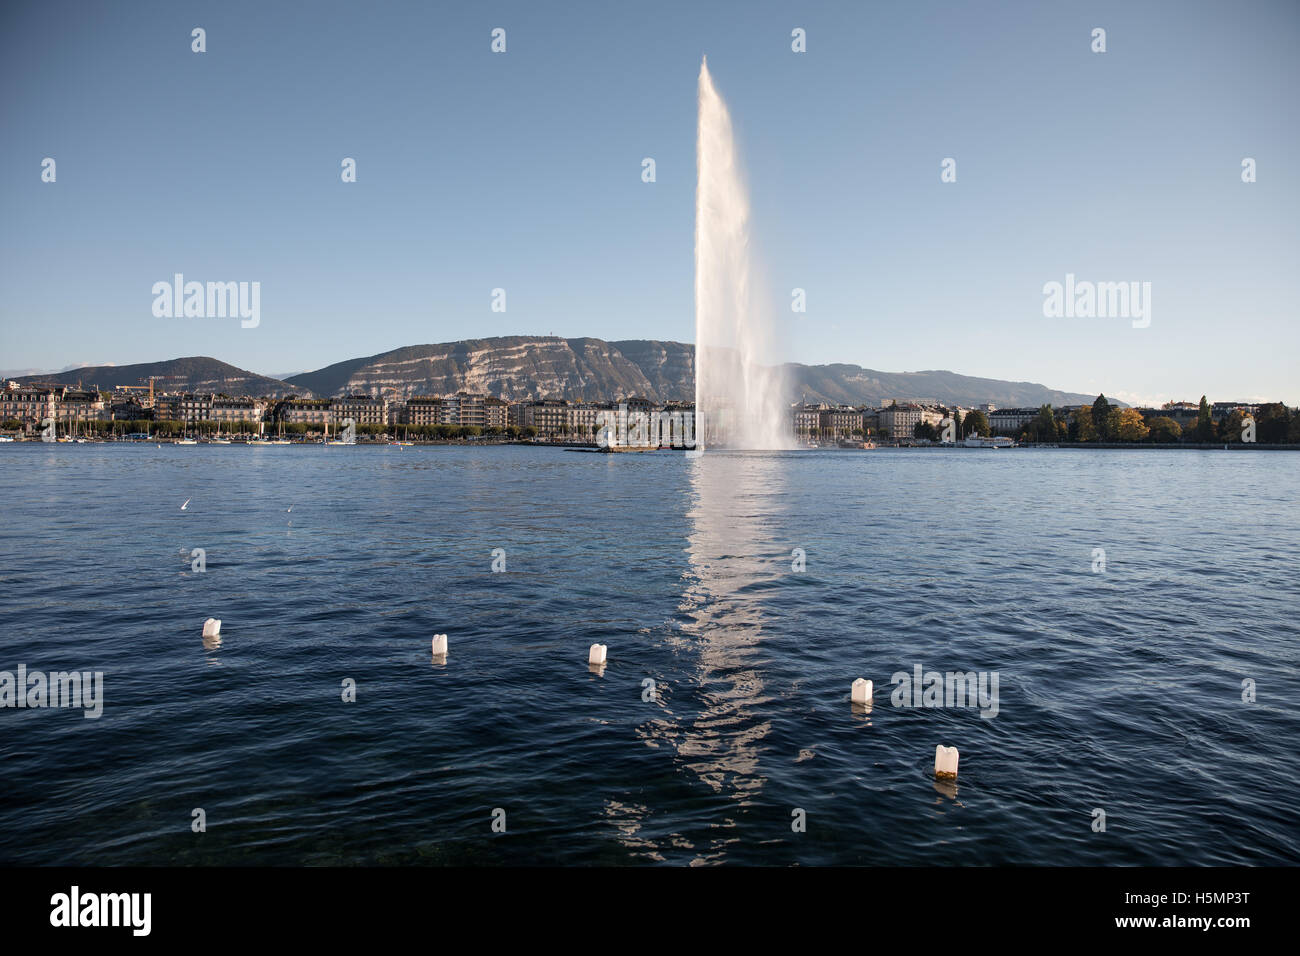 La fontaine du Jet d'eau sur le lac de Genève, Suisse. Banque D'Images